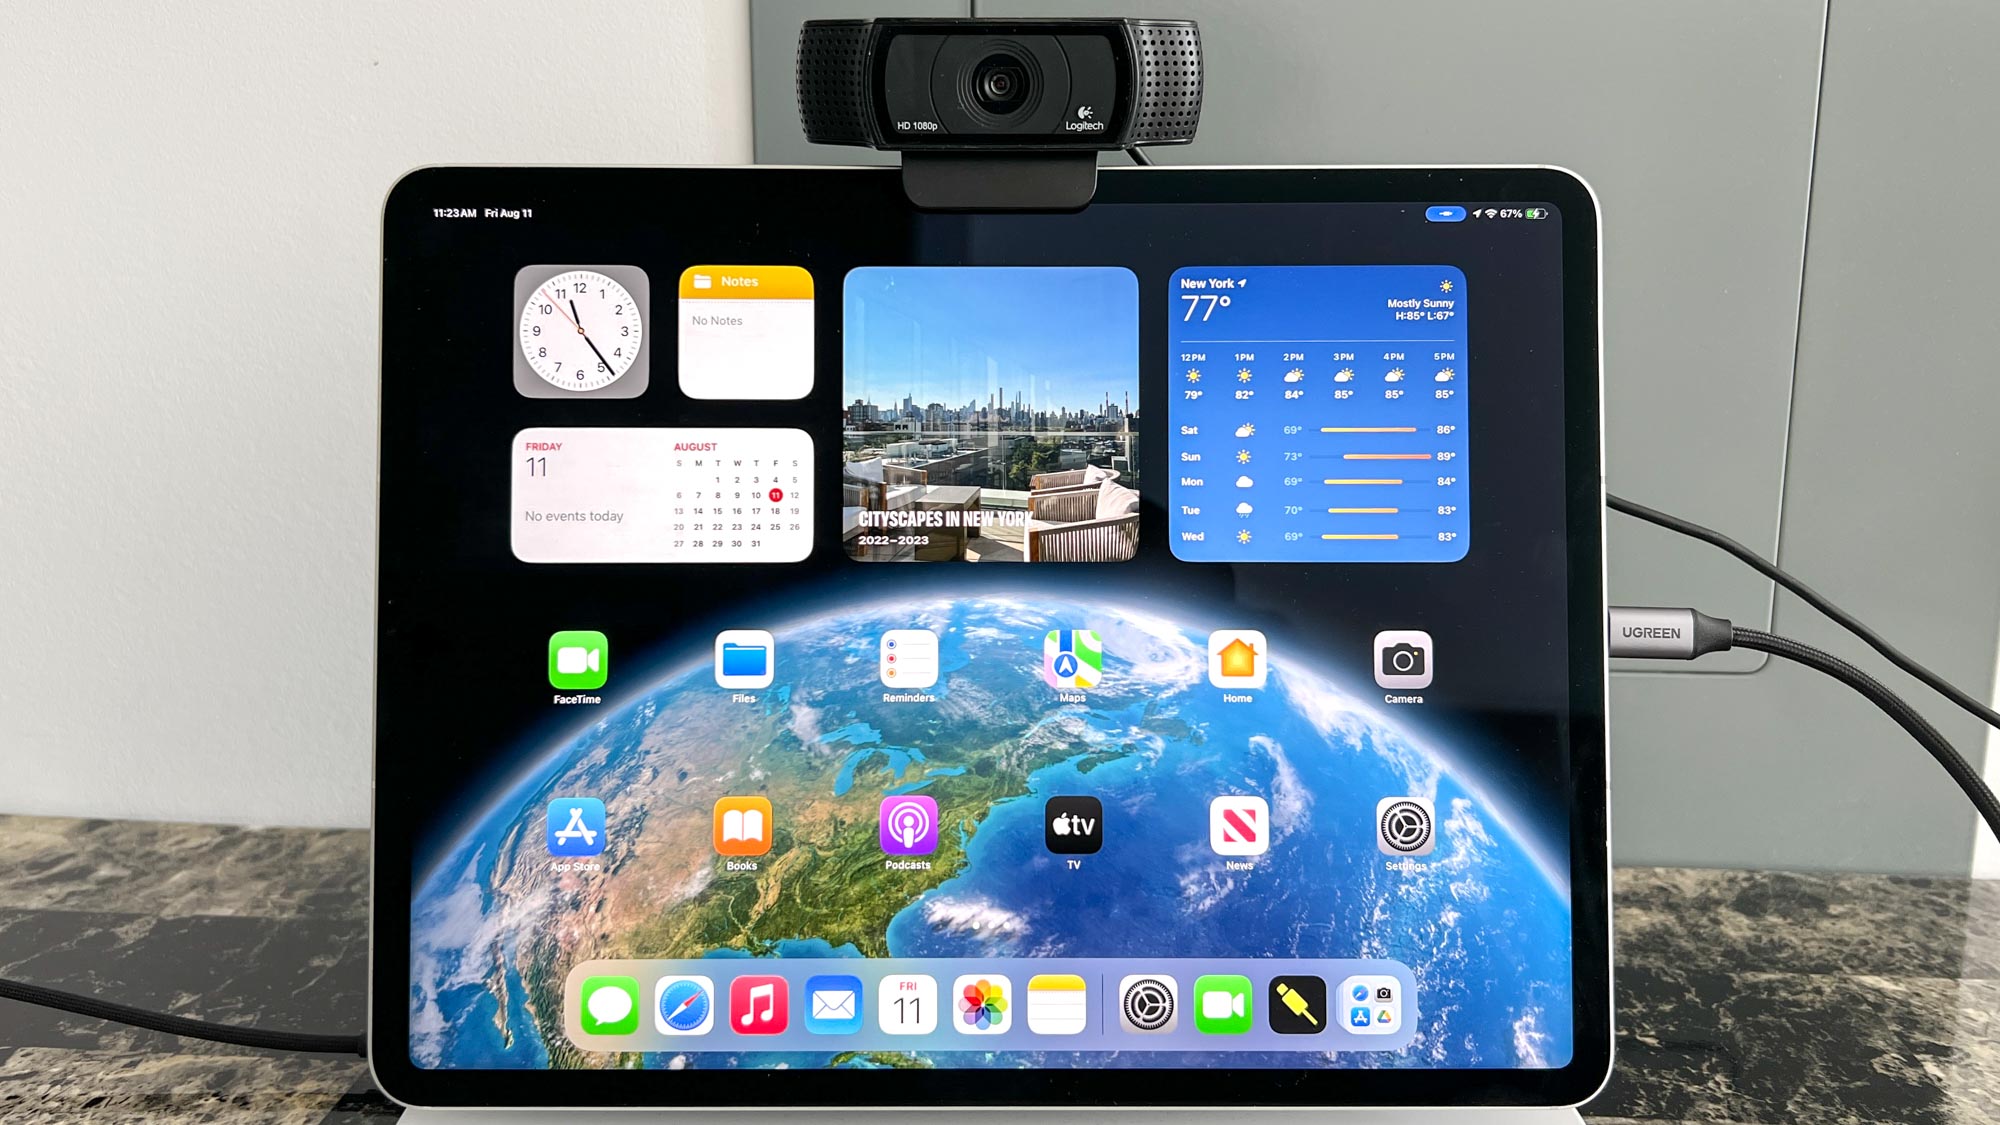 внешняя веб-камера USB, прикрепленная к верхней части iPad Air с клавиатурой Magic Keyboard, показывающая главный экран